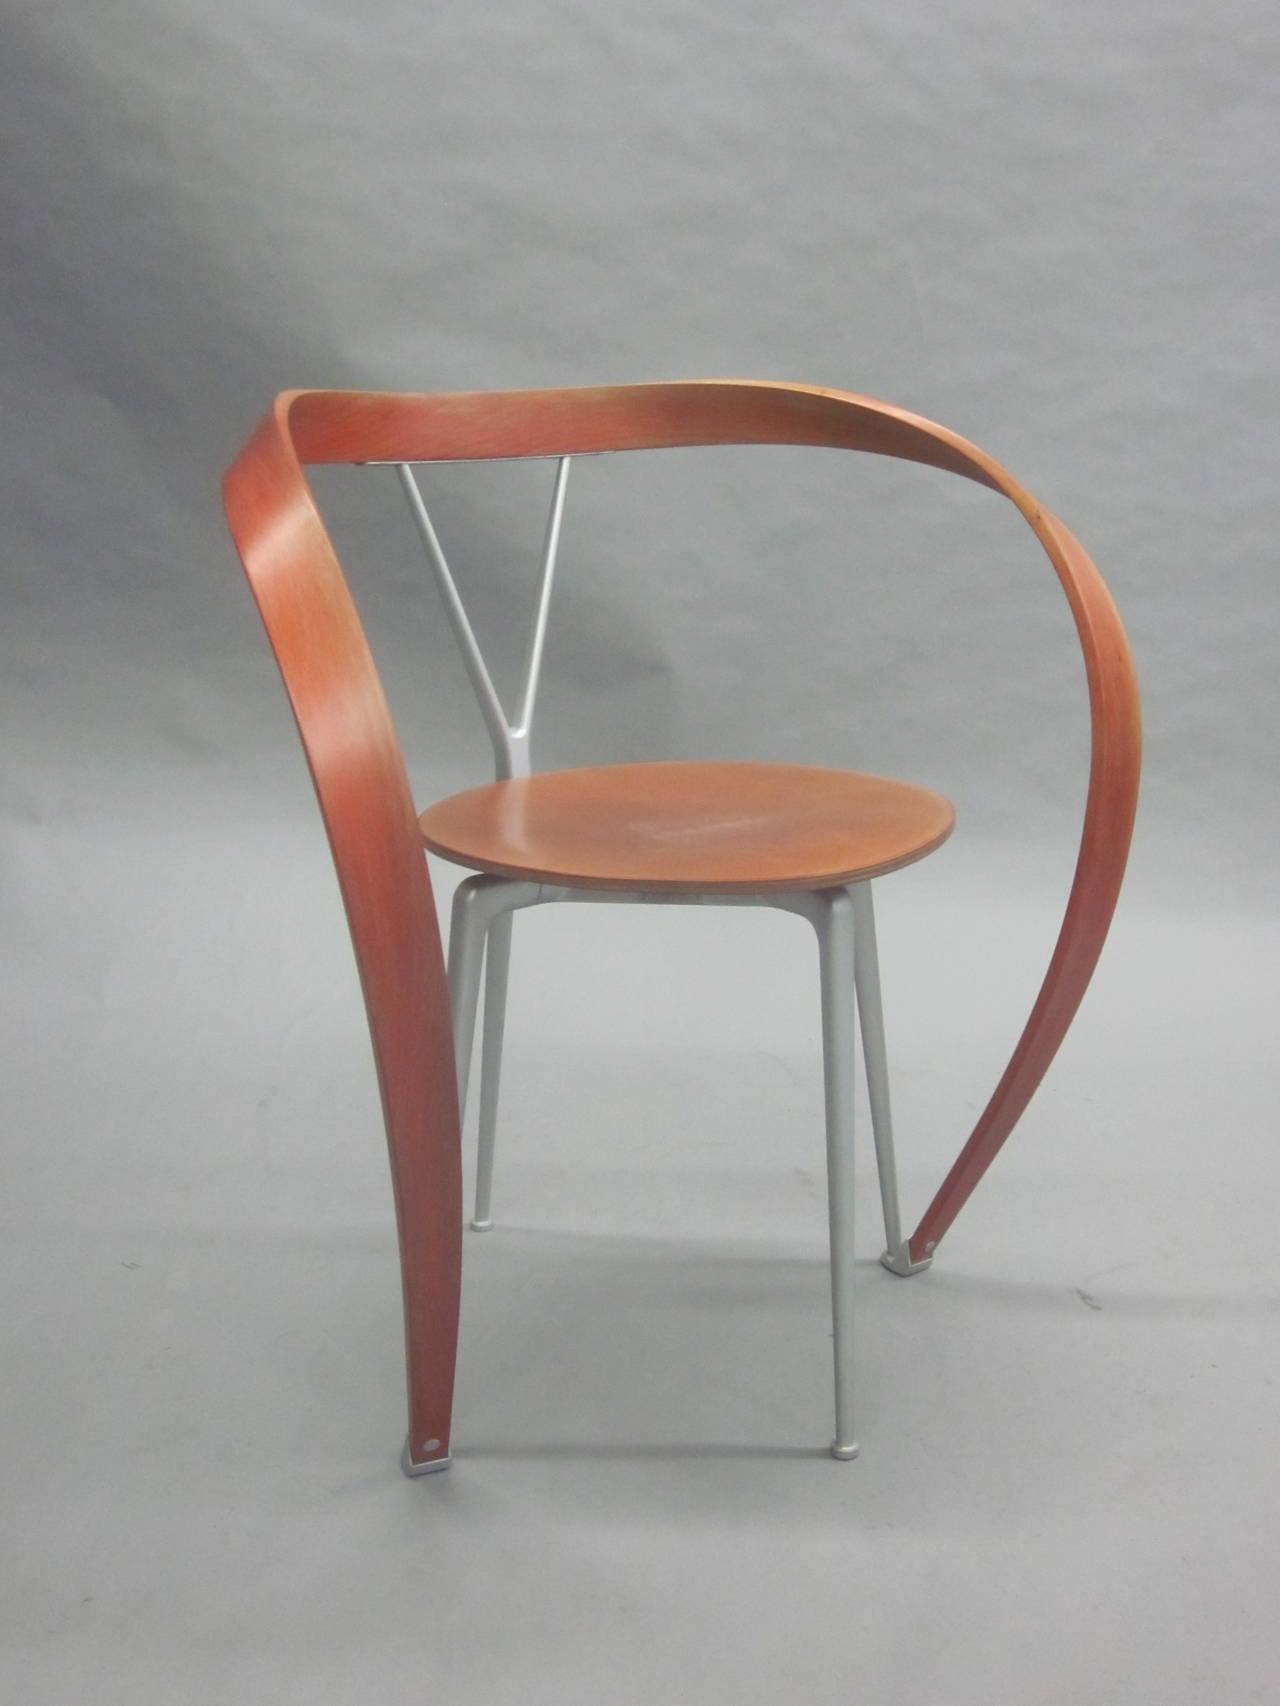 Un fauteuil design moderne iconique et visuellement époustouflant d'Andrea Branzi, avec une structure en acier anodisé mat, un support de dossier en bois de hêtre moulé et une structure d'accoudoir en forme de ruban inversé.

Hors production.